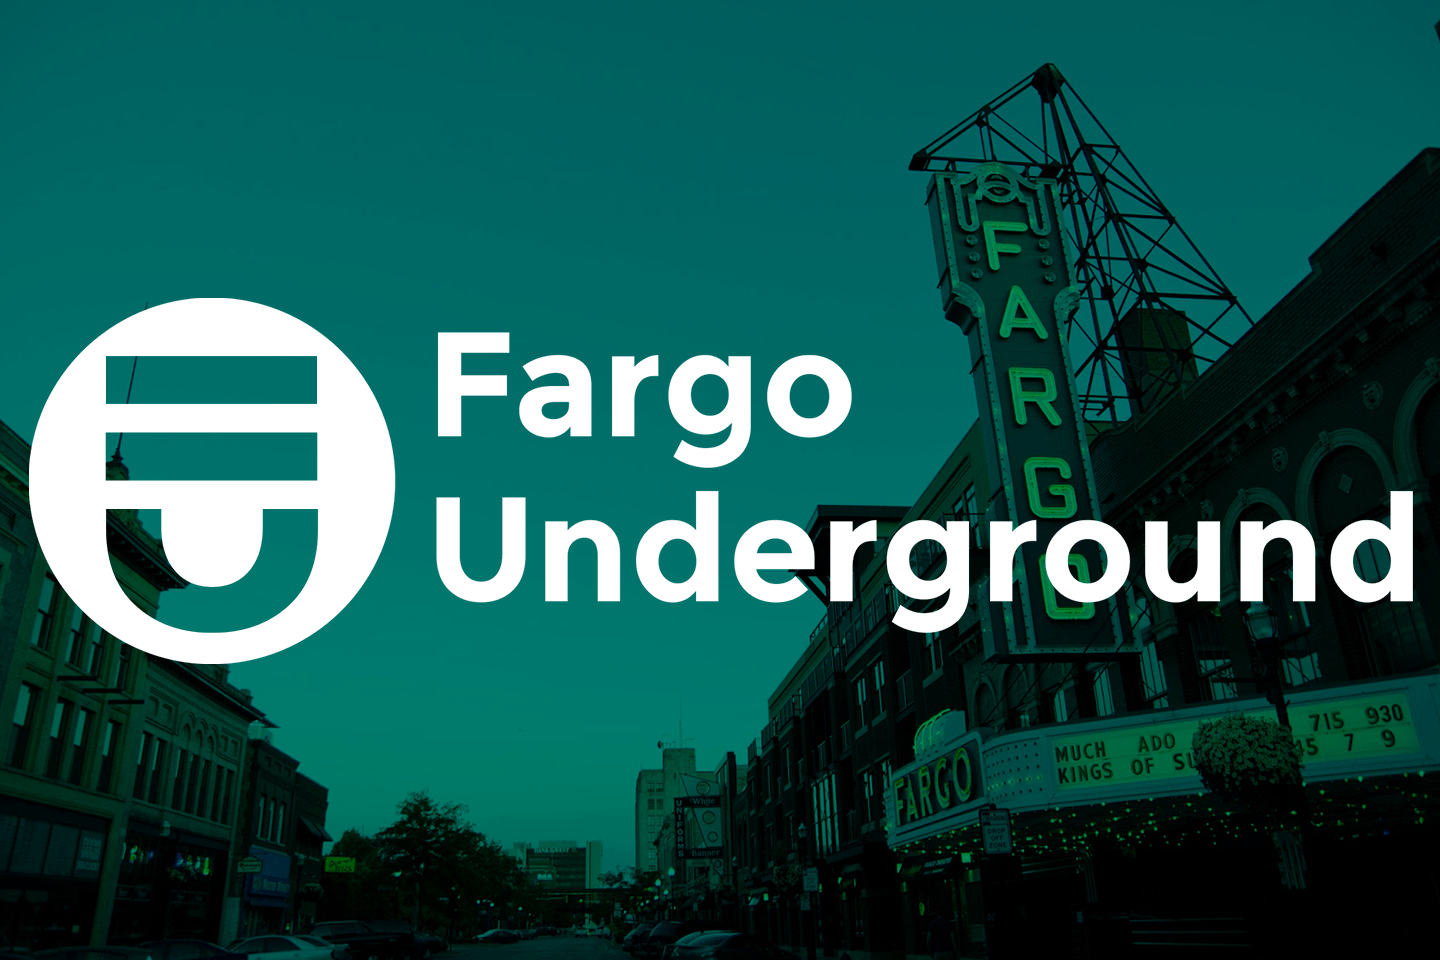 Fargo Underground Events